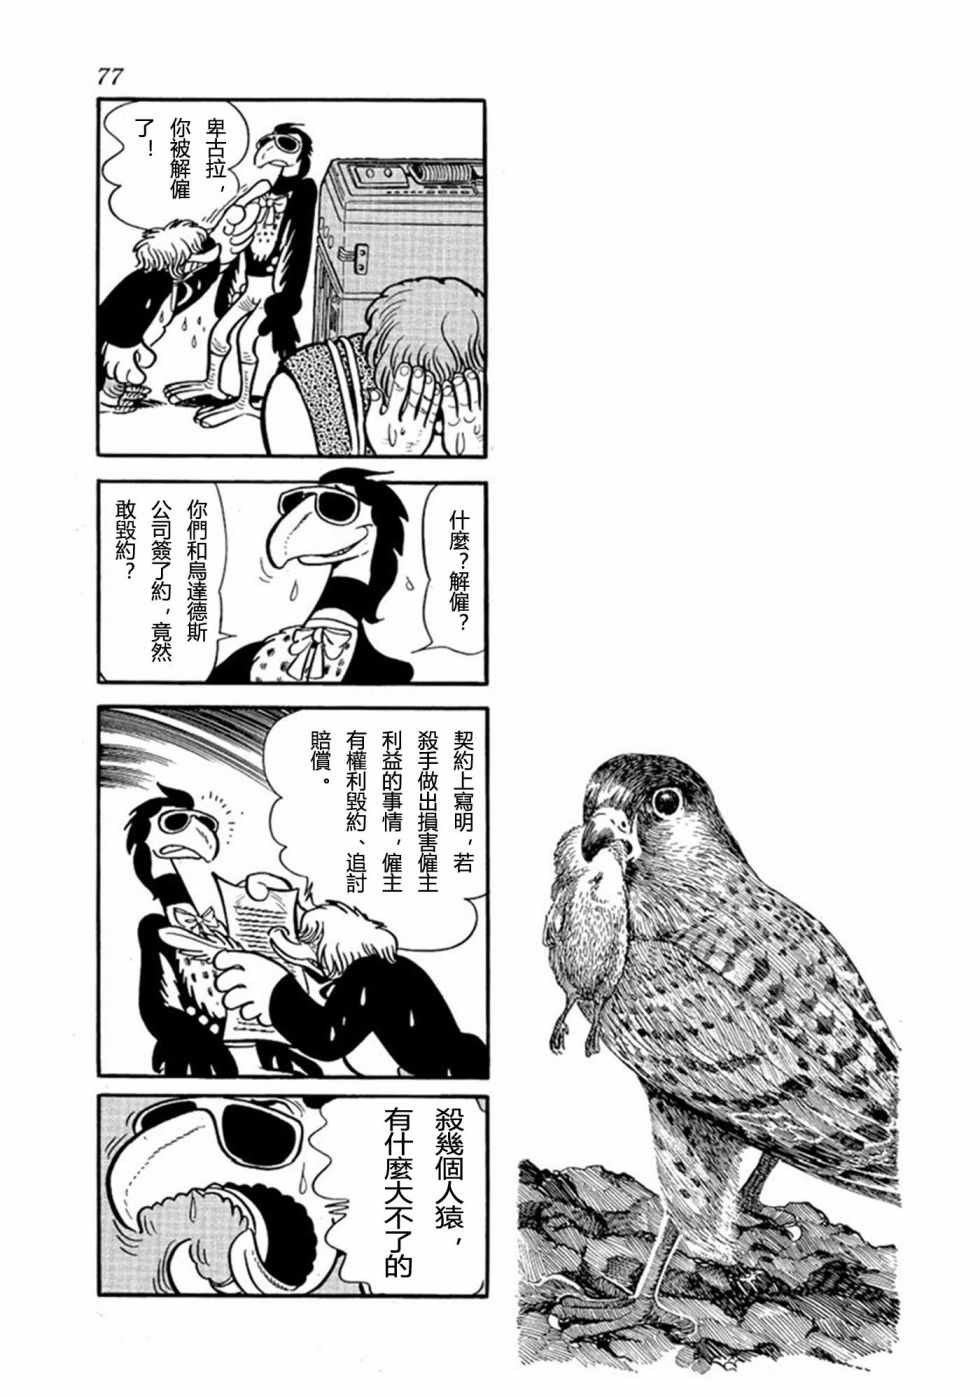 鳥人大系漫畫002卷 第72頁 鳥人大系002卷劇情 看漫畫